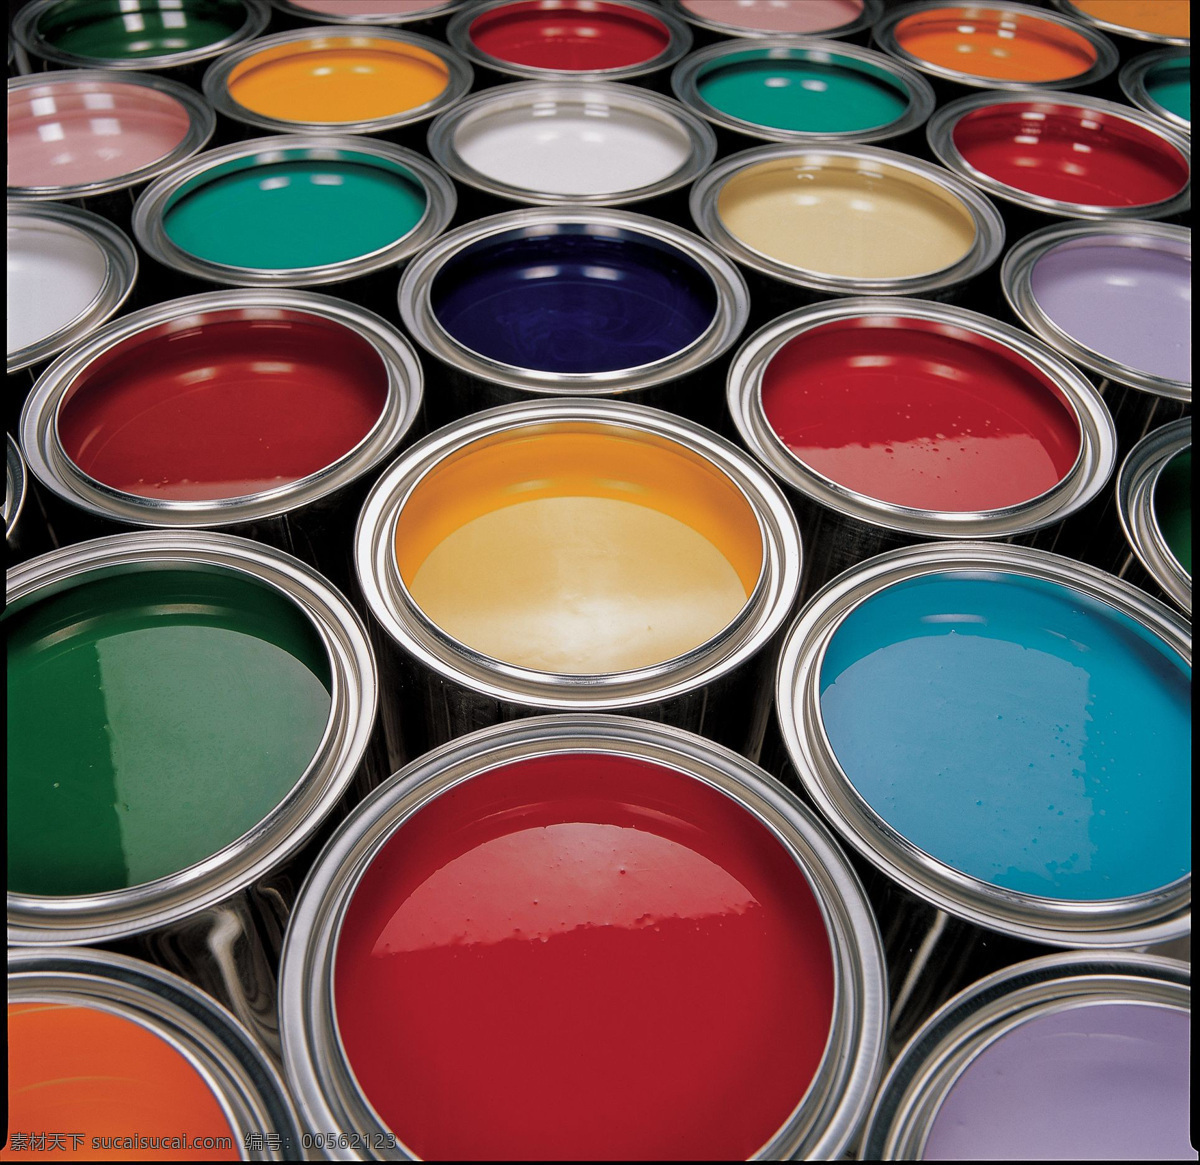 漆桶 颜料 彩色 多彩 容器 色彩 油漆桶 油漆 画笔 美术绘画 文化艺术